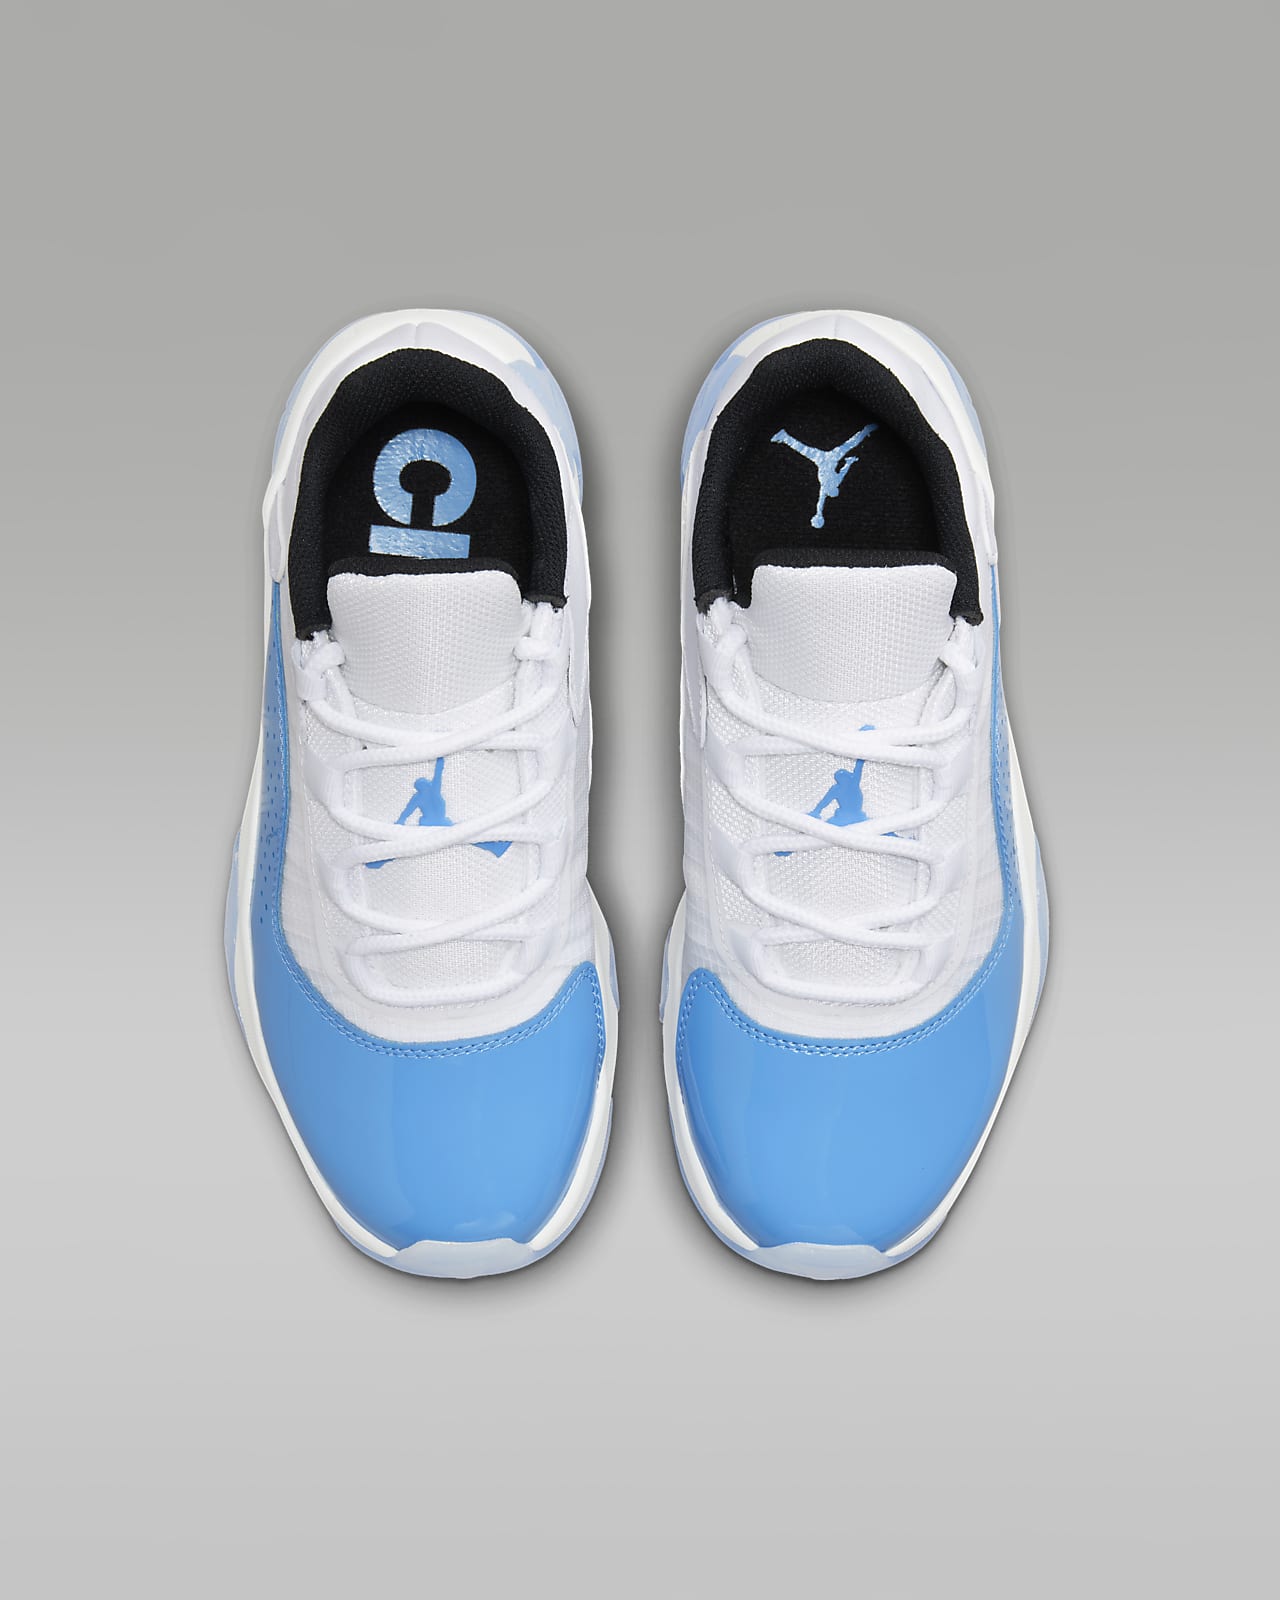 Air Jordan 11 CMFT Low Older Kids' Shoe. Nike LU